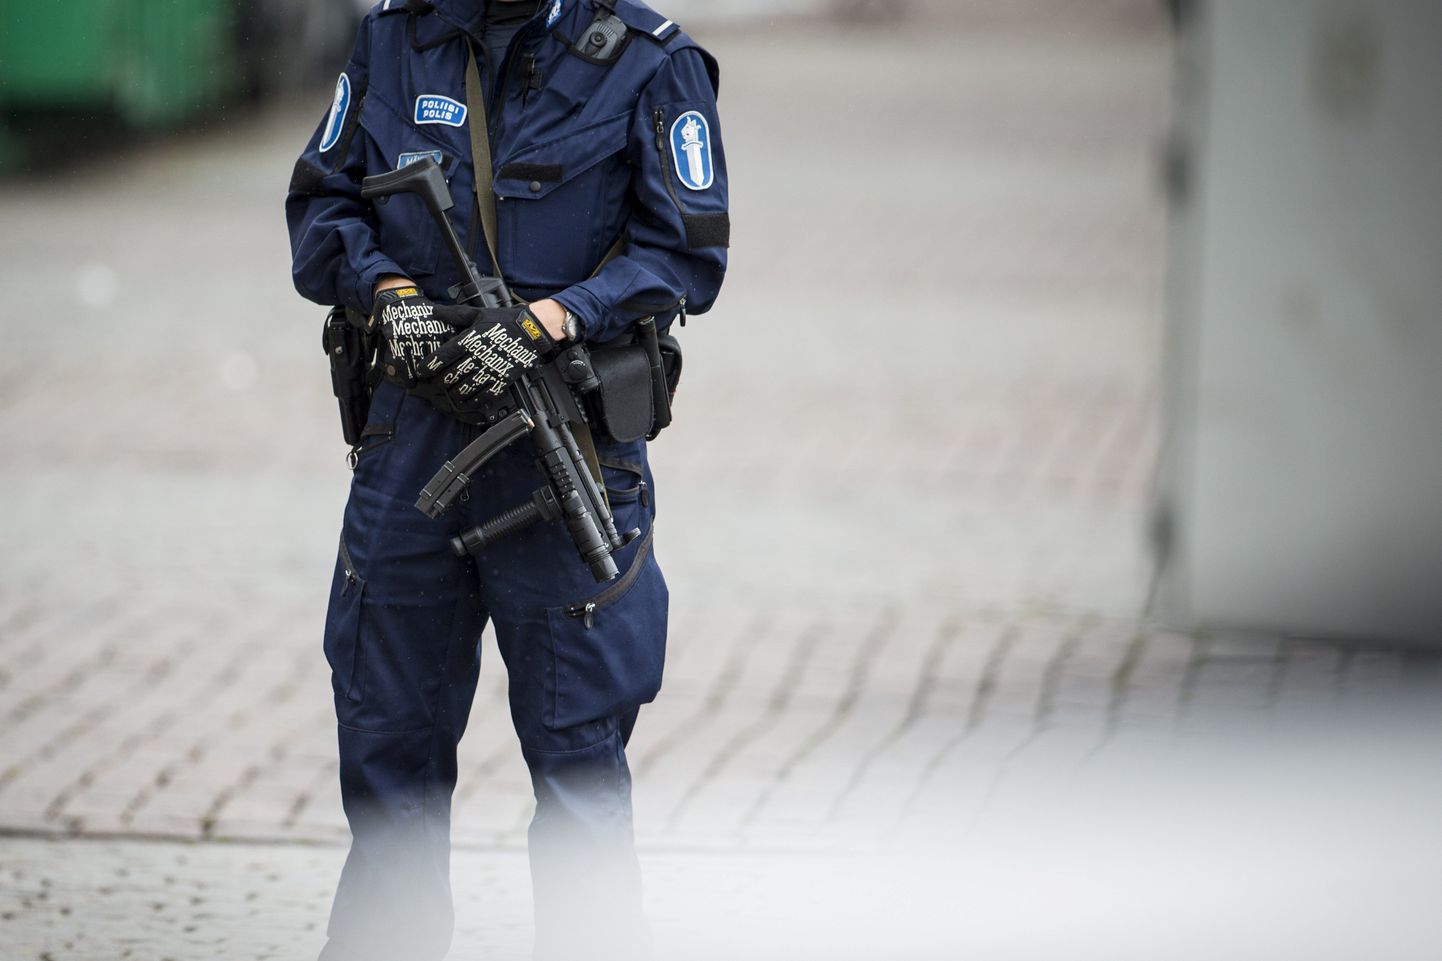 Soome politseinik. Pilt on illustratiivne.